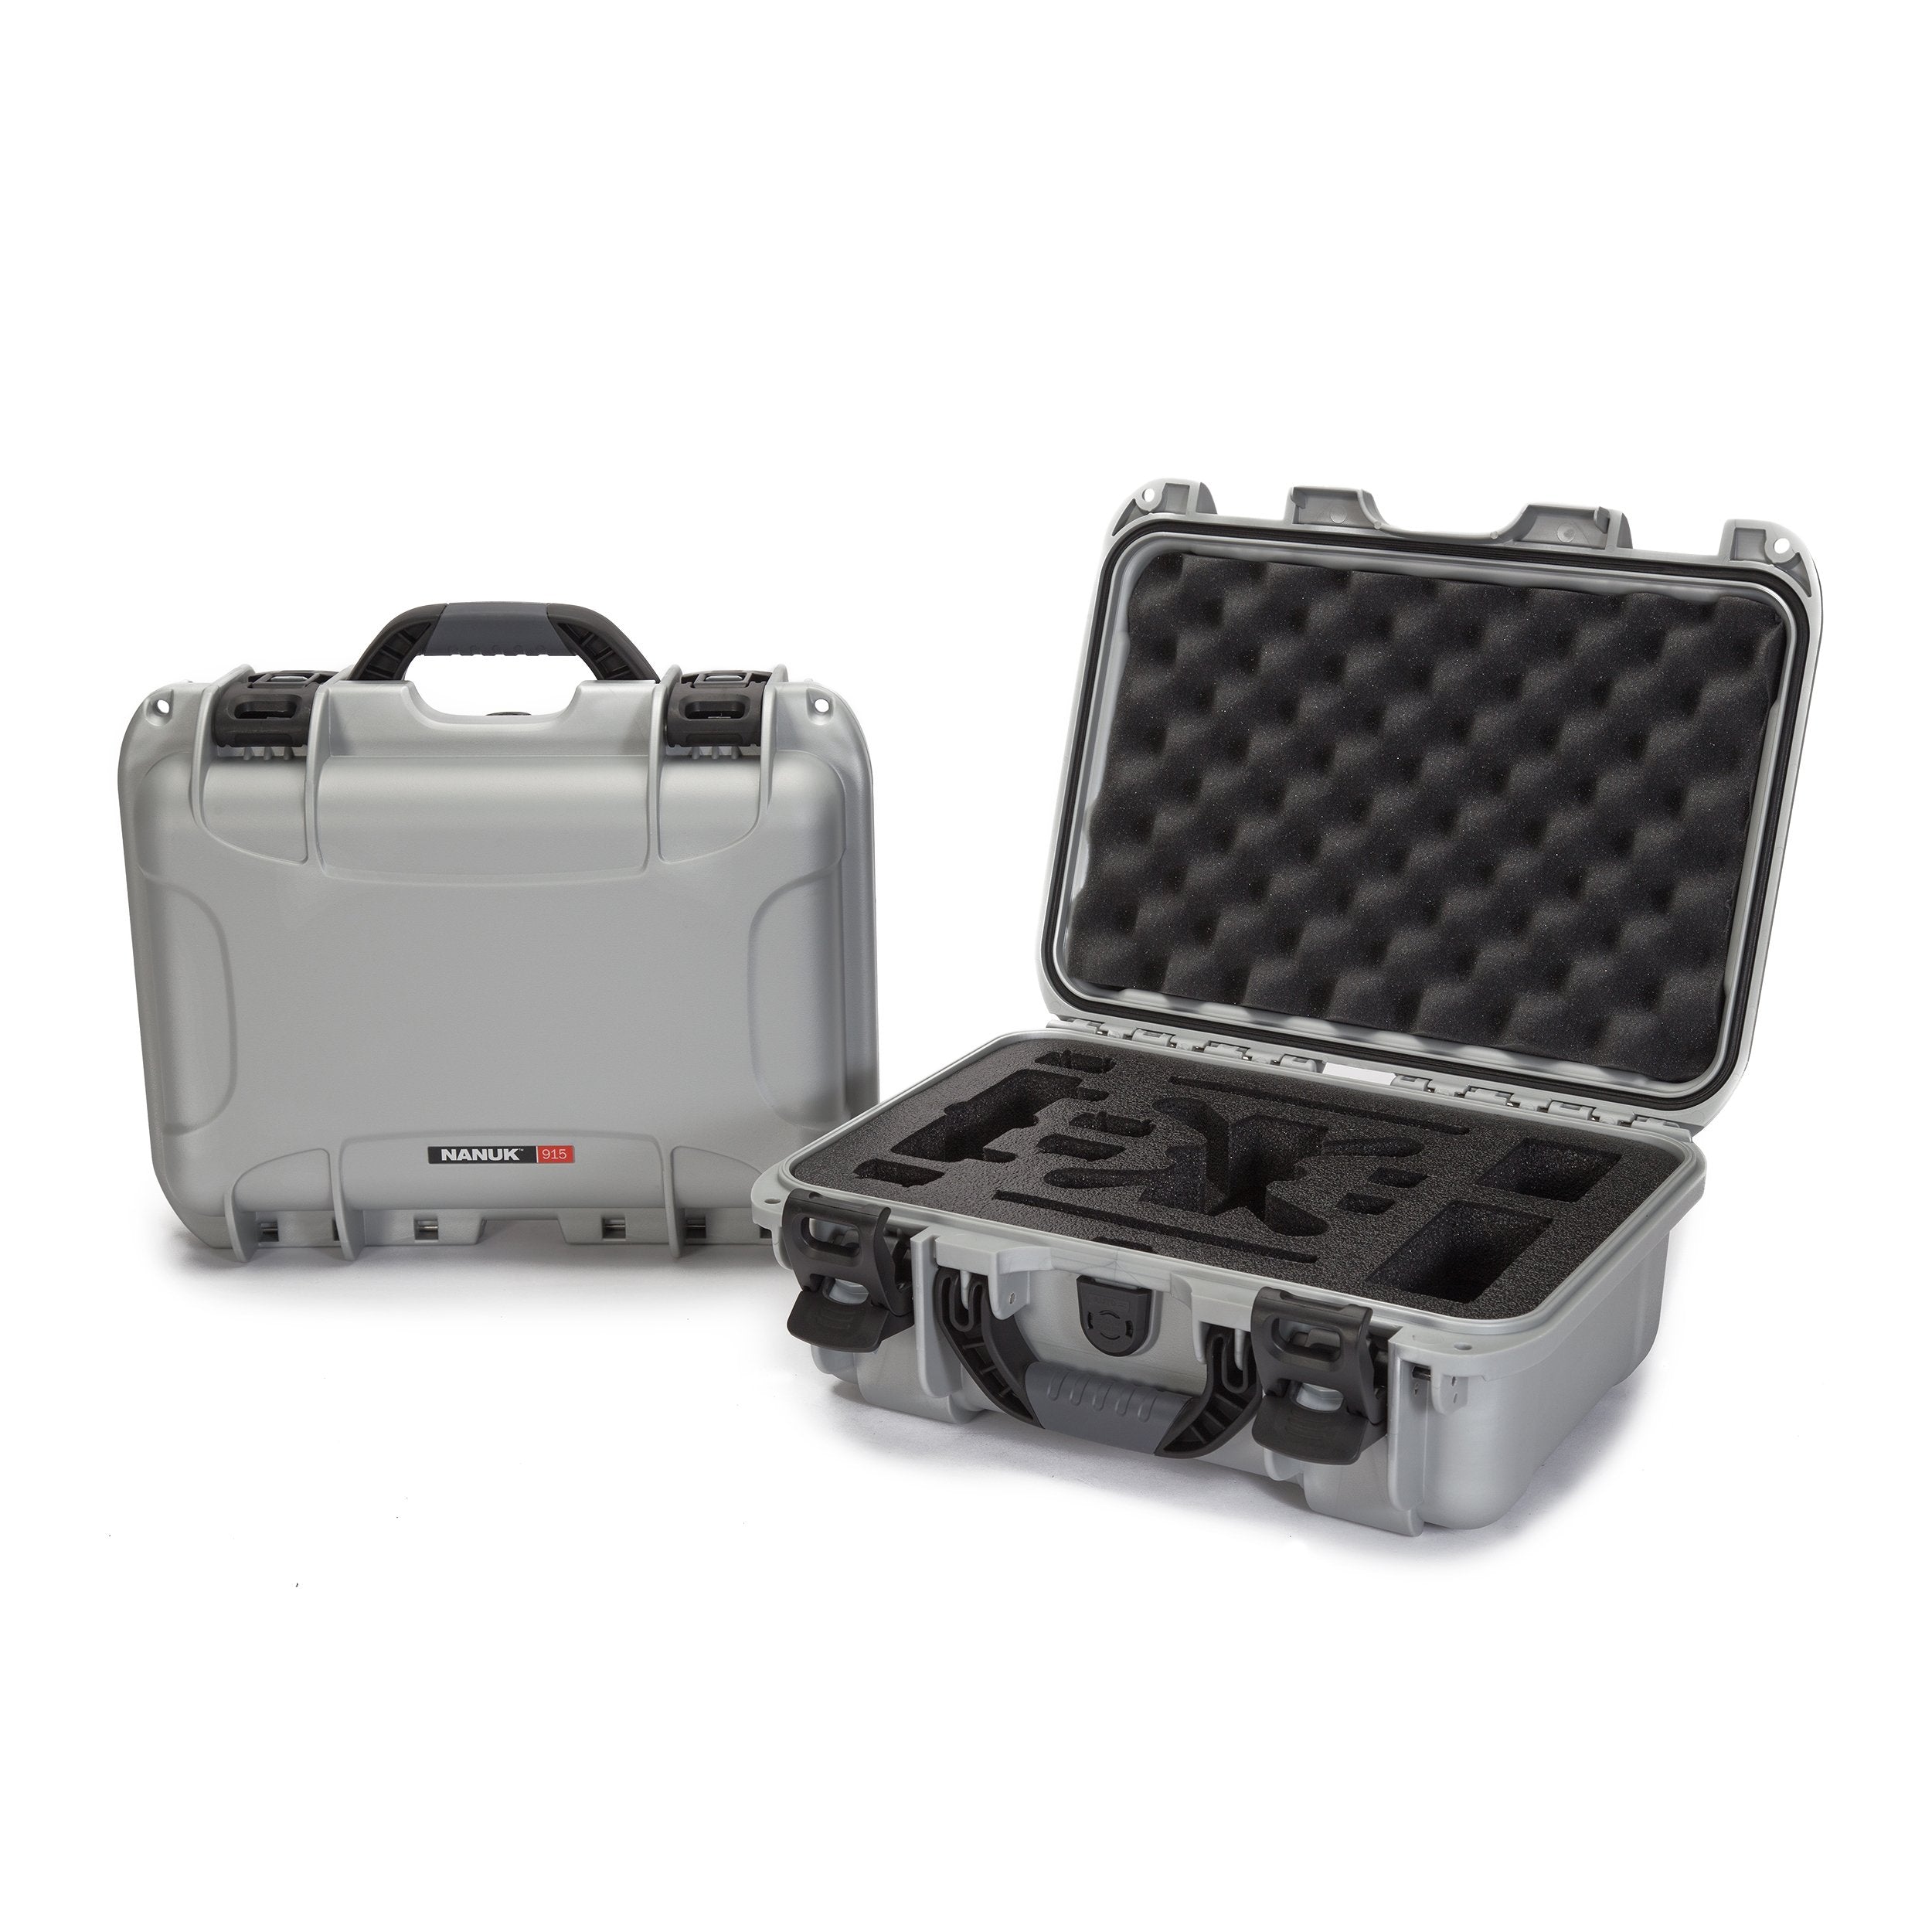 Nanuk 915 Waterproof Hard Drone Case with Custom Foam Insert for DJI Spark Flymore - Silver